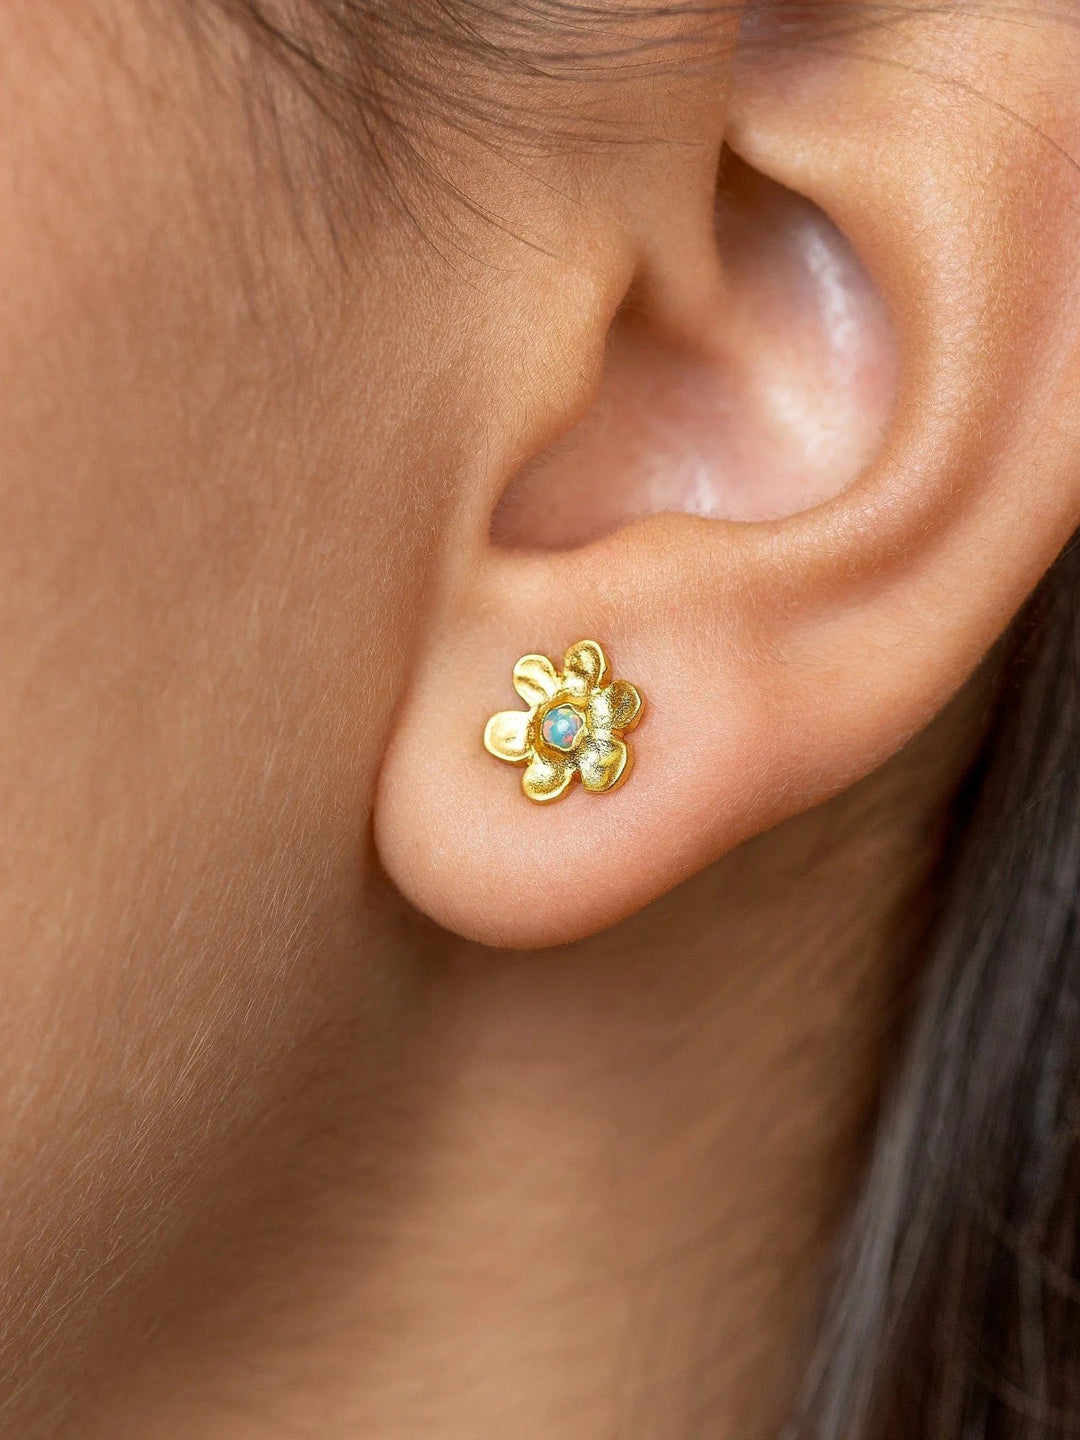 Luchi Flower Stud Earrings - 925 Sterling Silver Mattecool earringscute earringsLunai Jewelry